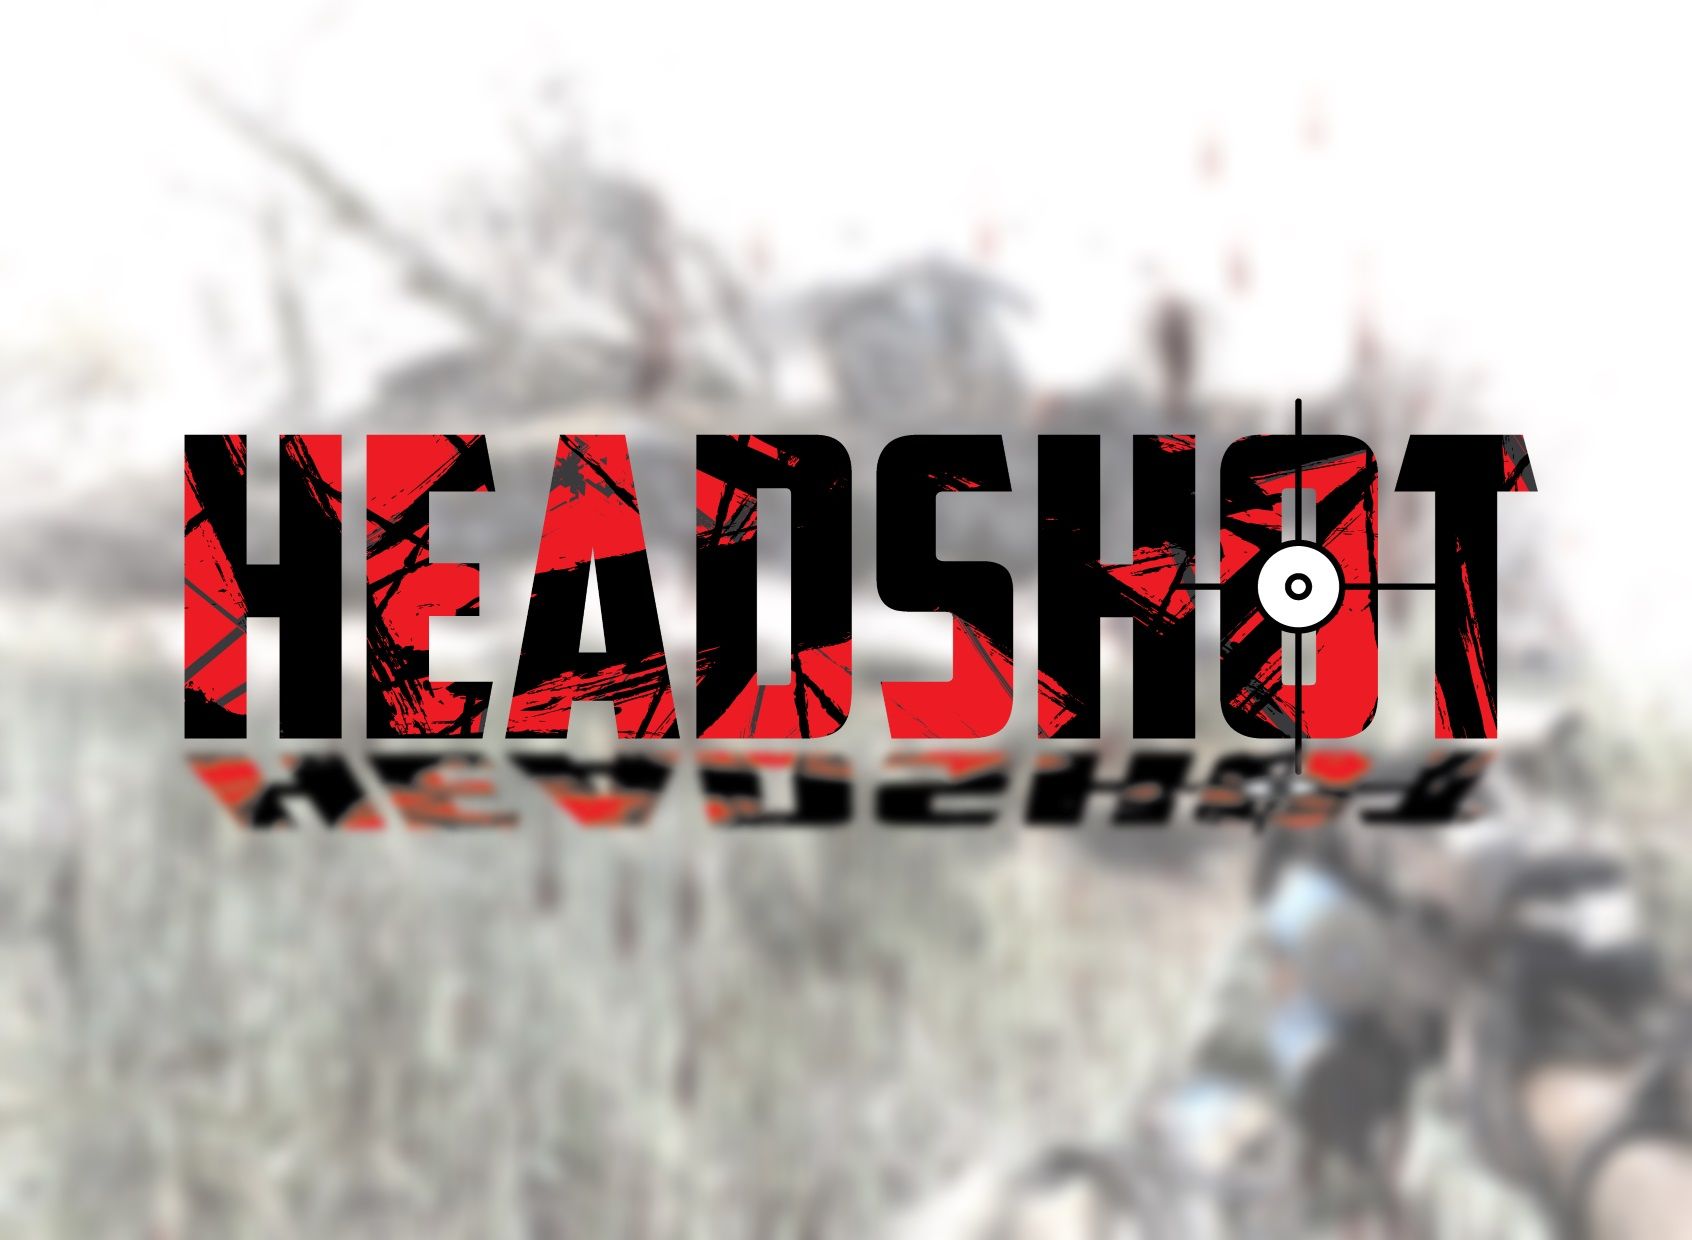 Логотип для игрового проекта HEADSHOT - дизайнер VOROBOOSHECK